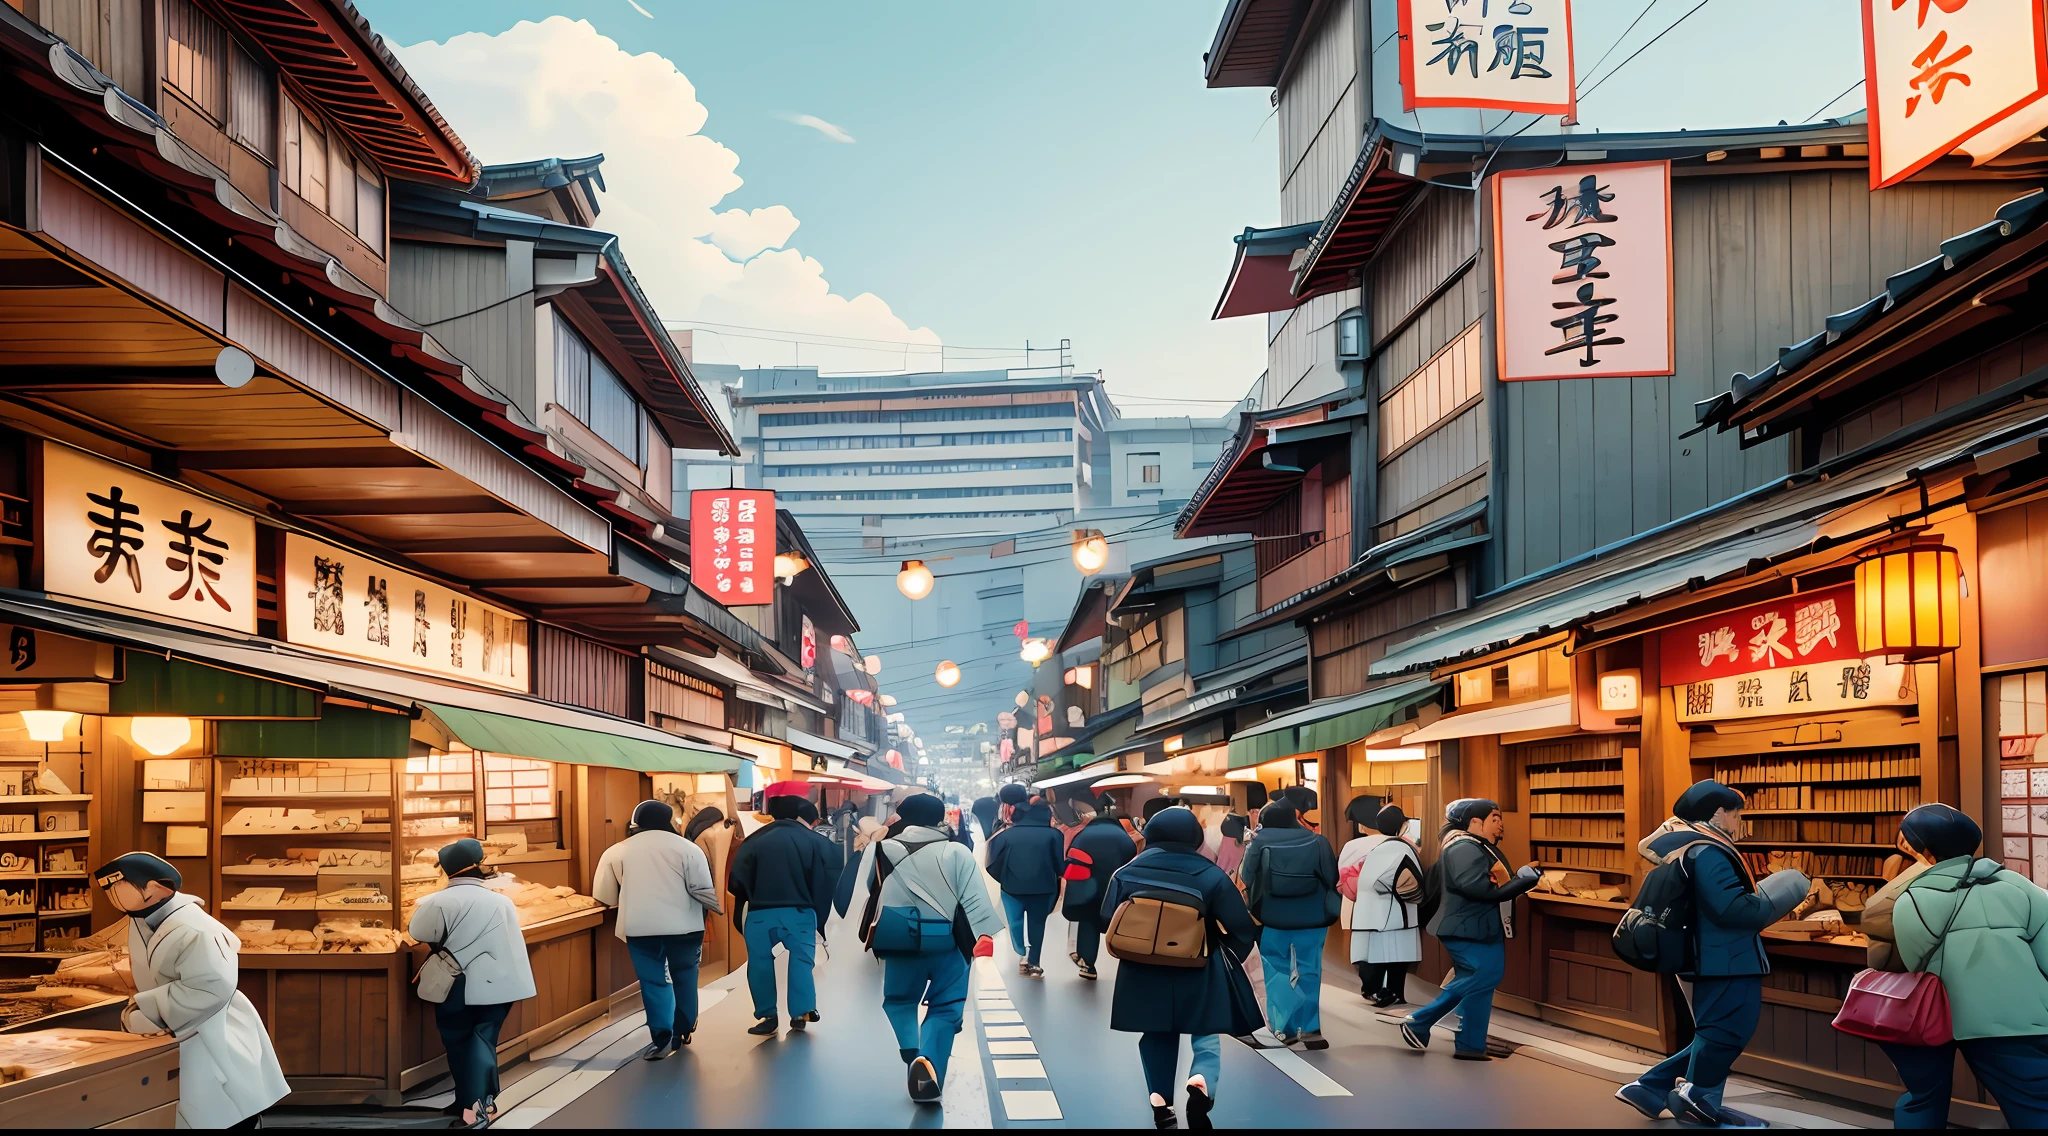 ผู้คนเดินไปตามถนนที่เรียงรายไปด้วยร้านค้าและร้านค้าต่างๆ, old ญี่ปุ่นese street market, market in ญี่ปุ่น, ญี่ปุ่นese downtown, ญี่ปุ่นese street, ญี่ปุ่นese city, ญี่ปุ่น travel and tourism, ญี่ปุ่นese town, ชัตเตอร์สต็อก, ถนนโตเกียว cityscape, เกียวโต, cyberpunk streets in ญี่ปุ่น, ถนนโตเกียว, ญี่ปุ่น, ญี่ปุ่น deeper travel exploration, ญี่ปุ่น sightseeing, ถนนโตเกียว background, เกียวโต ญี่ปุ่น setting